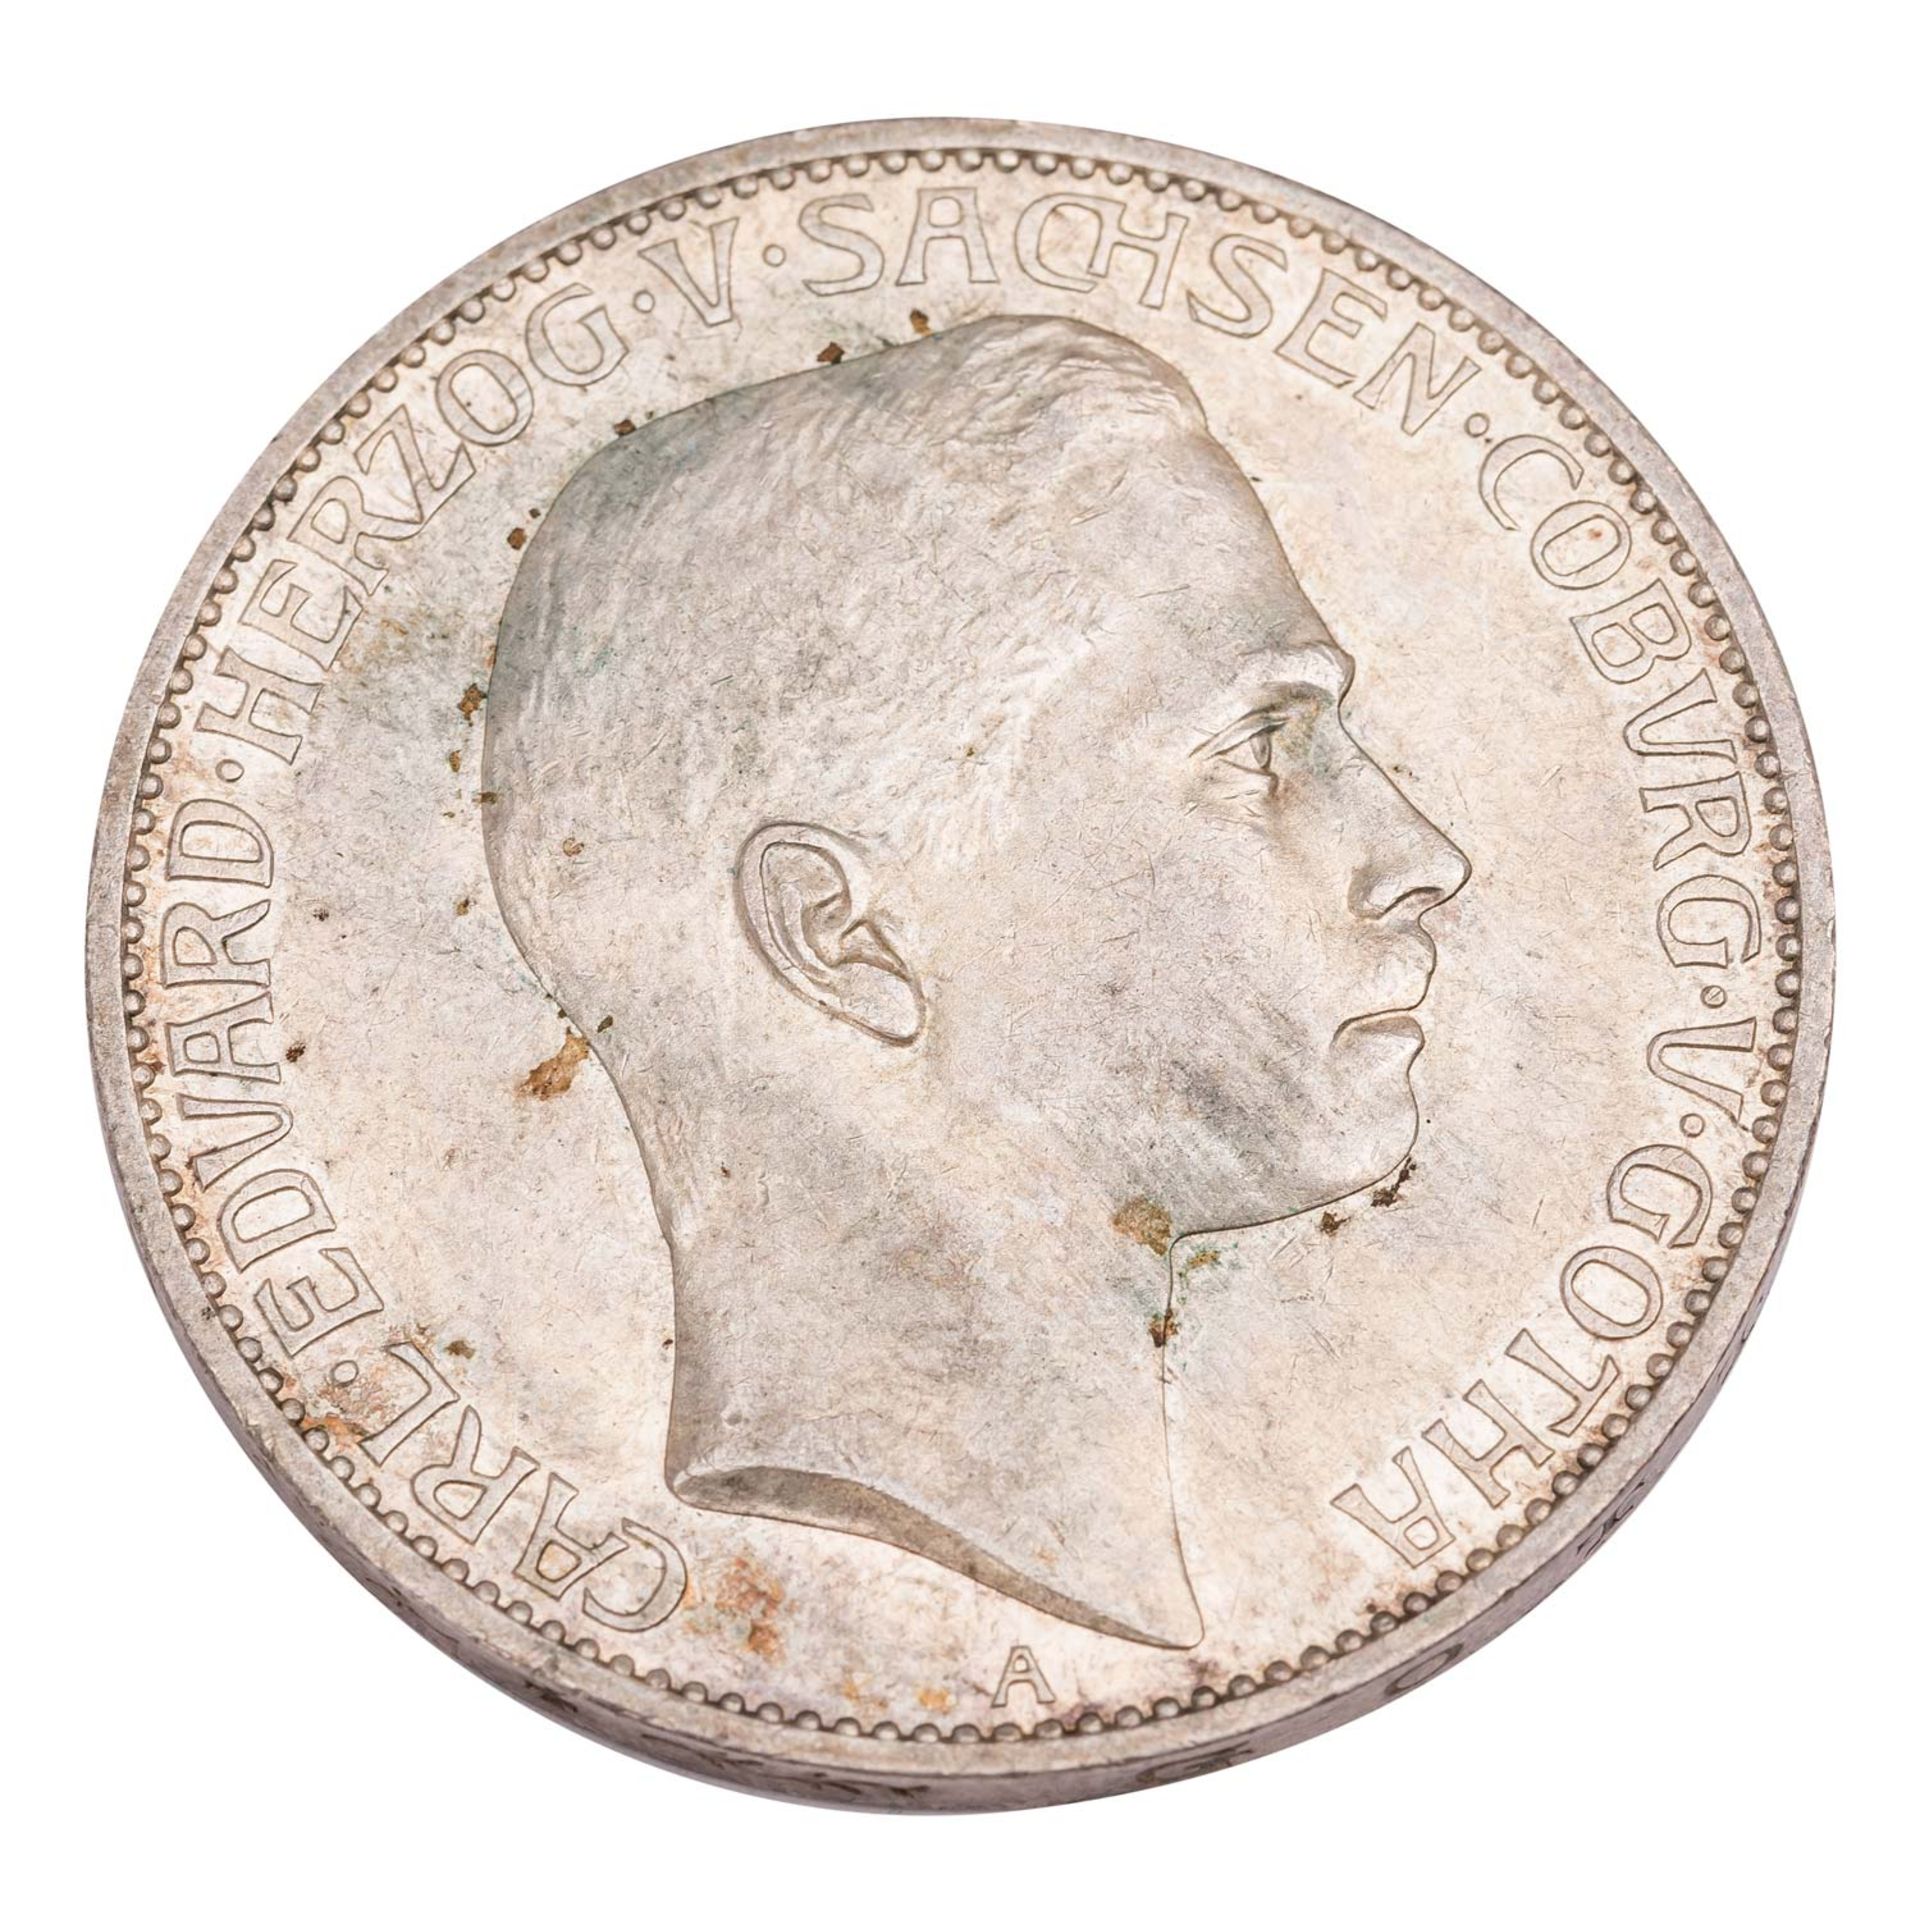 Herzogtum Sachsen-Coburg und Gotha/Silber - 5 Mark 1907/A, Herzog Carl Eduard, - Image 2 of 3